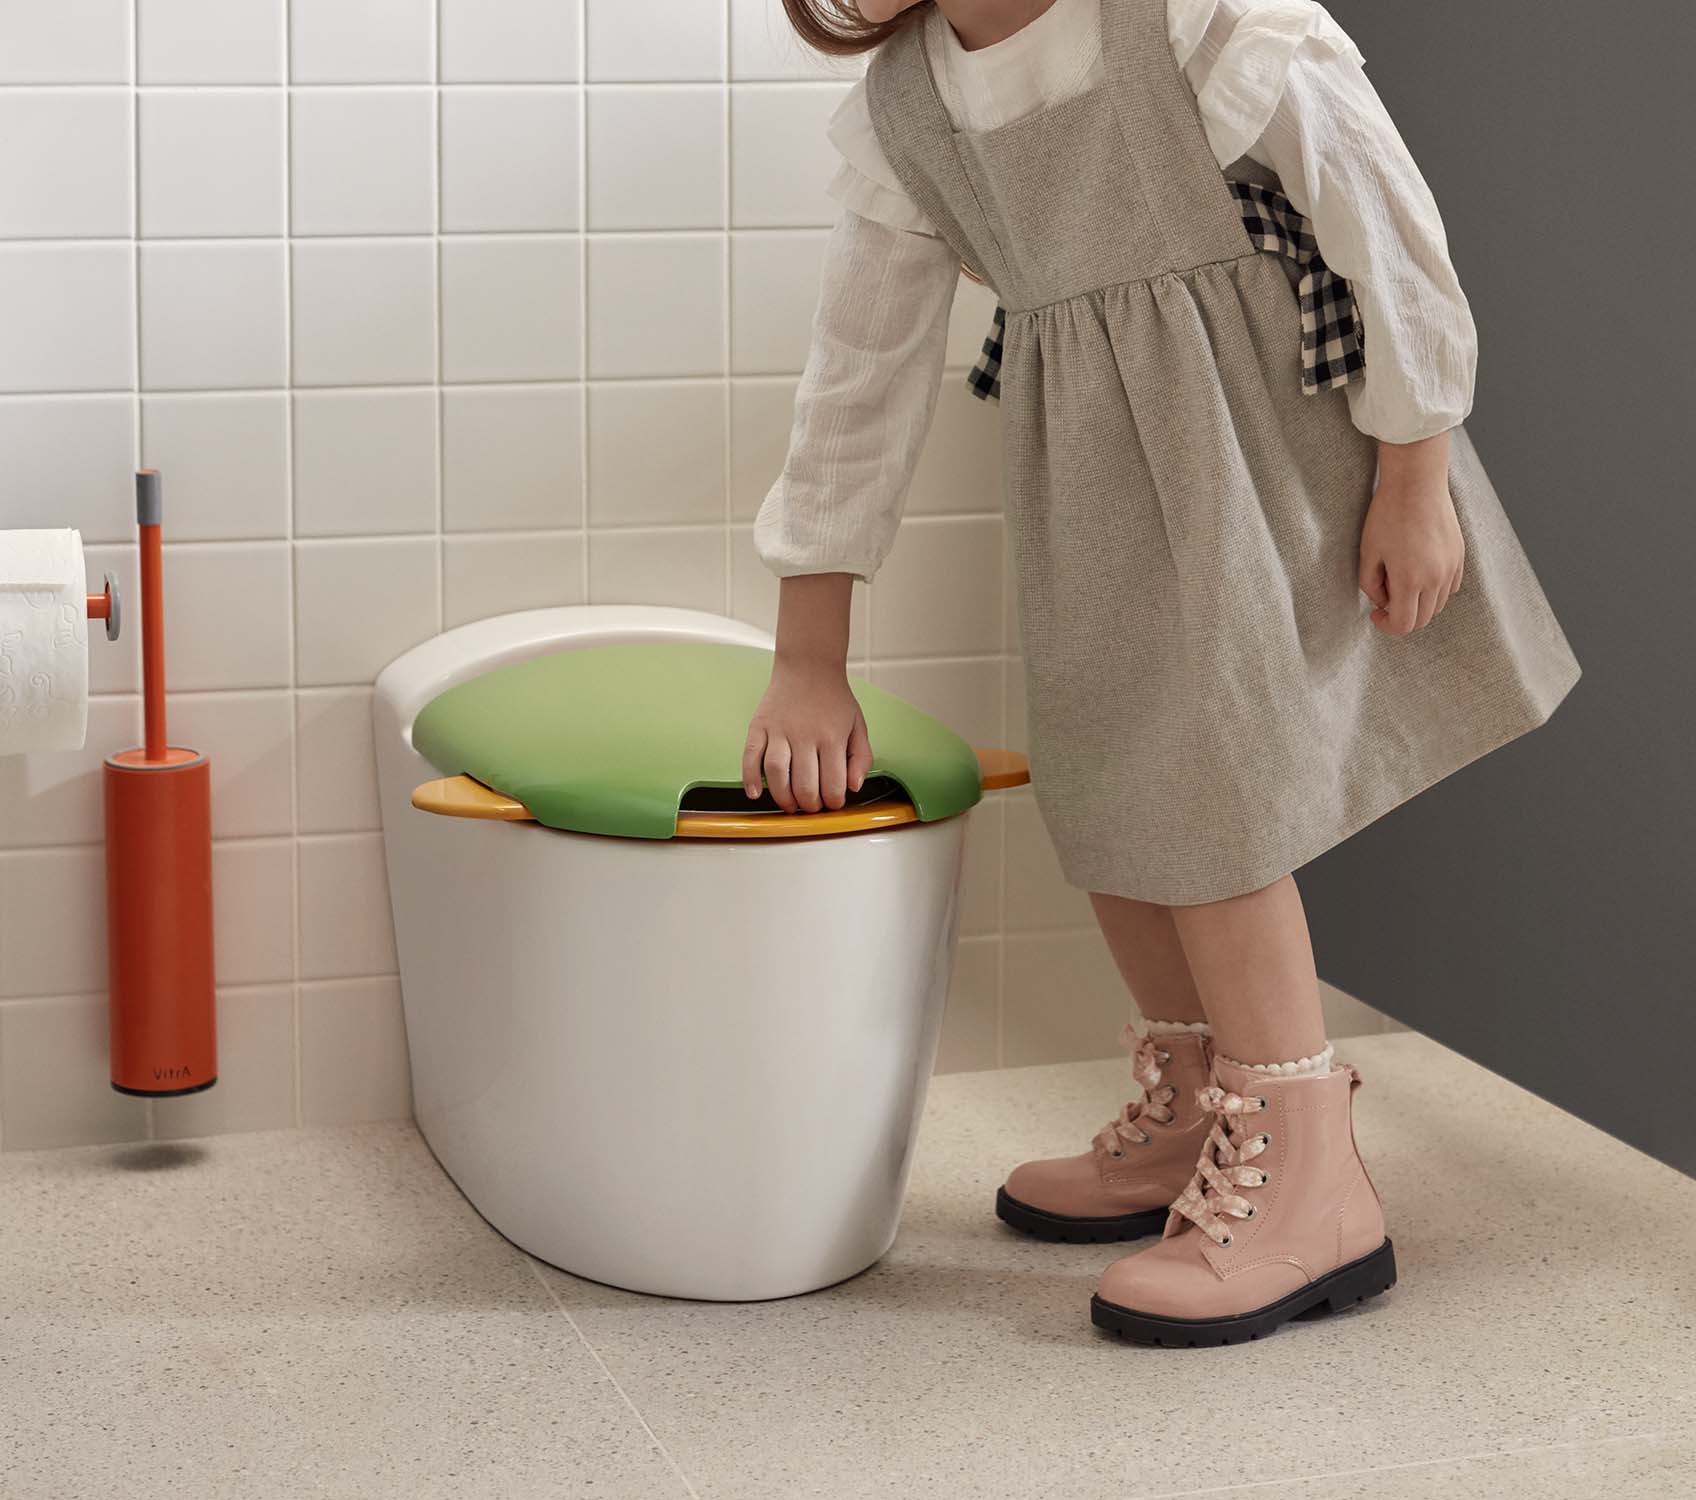 SENTO KIDS WC en céramique pour enfants By VitrA Bathrooms